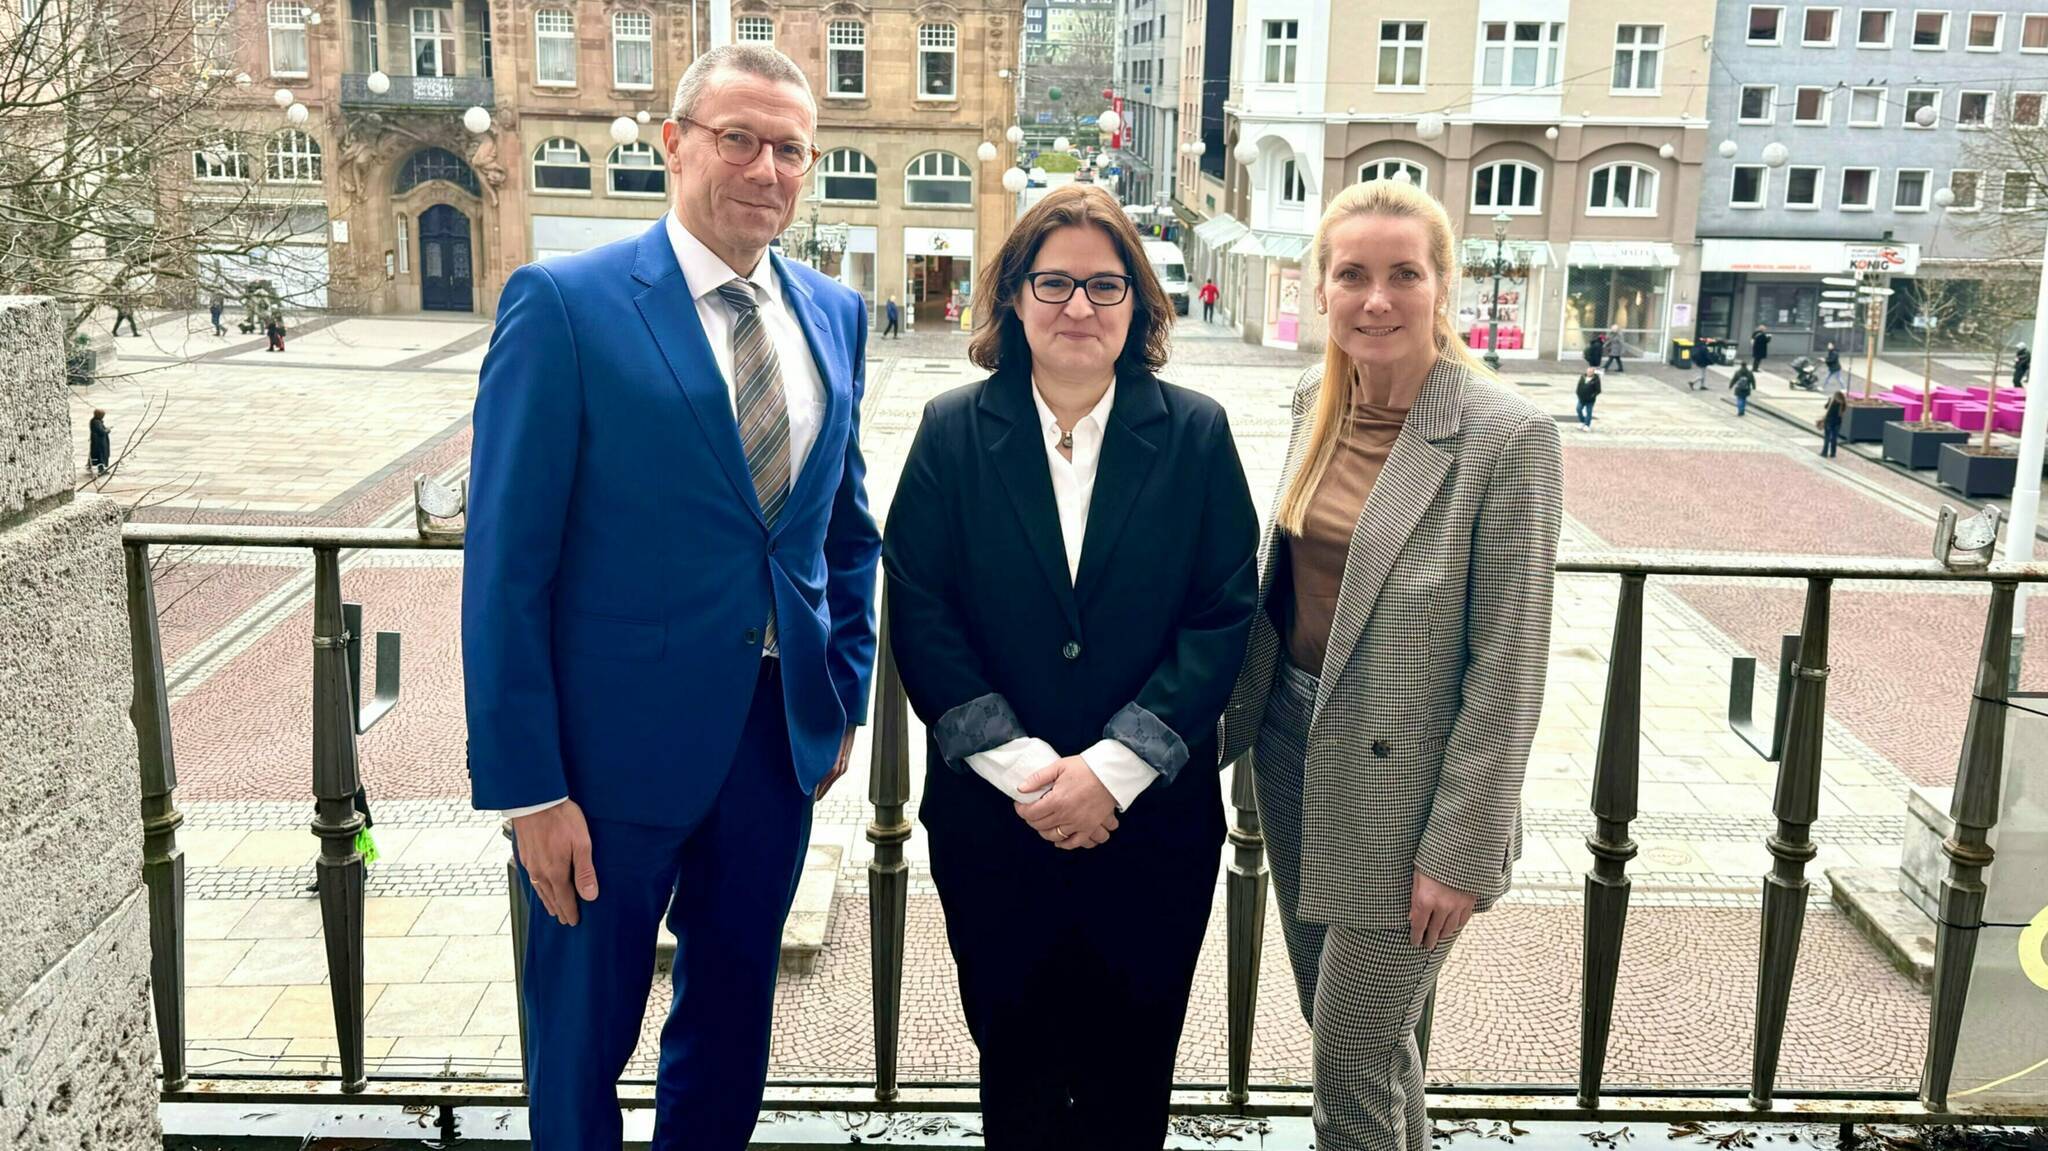  Eva Platz (Mitte), künftige Chefin der Wuppertaler Wirtschaftsförderung, bei ihrer Vorstellung mit Wirtschaftsdezernentin Sandra Zah und Oberbürgermeister Uwe Schneidewind.   